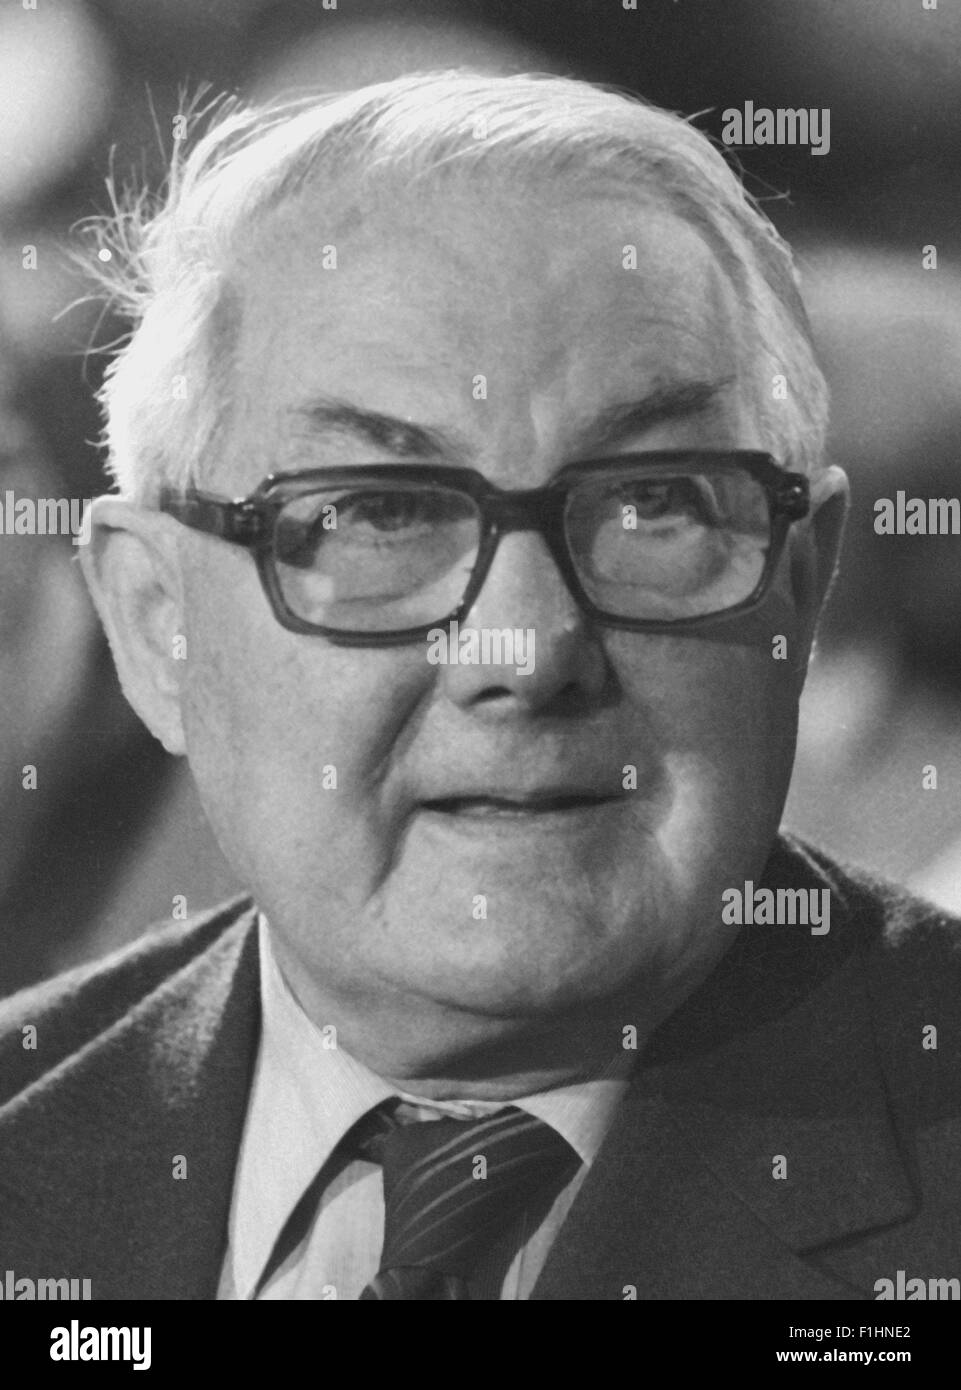 Señor James Callaghan Callaghan MP antiguo primer ministro británico. Imagen de 1984. Foto de stock